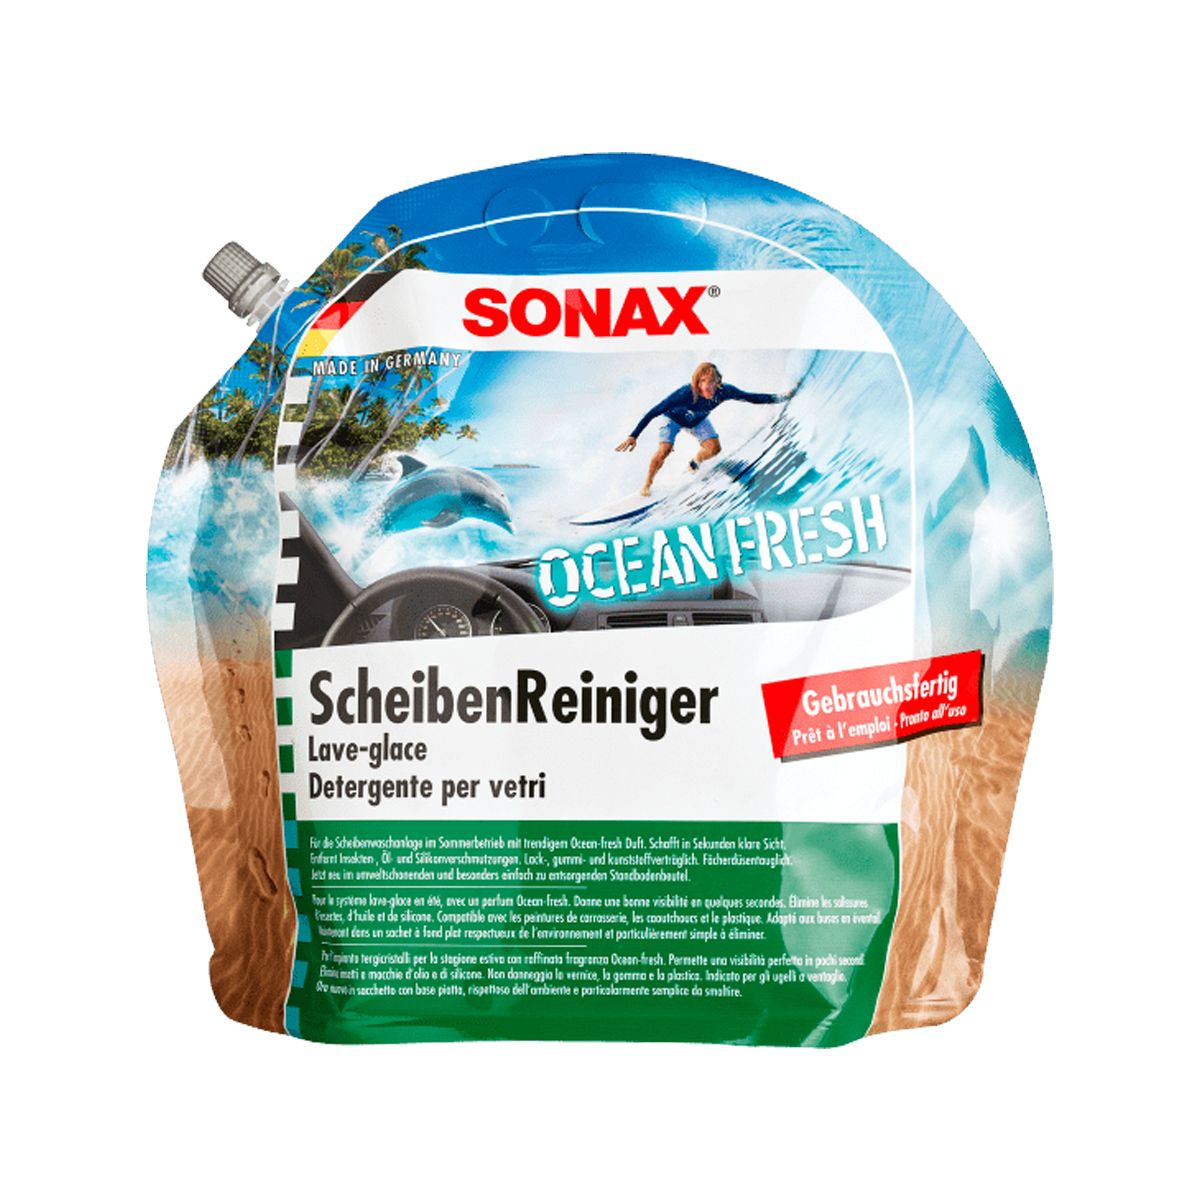 Sonax Scheibenreiniger Ocean-Fresh 3 L bei ATO24 ❗